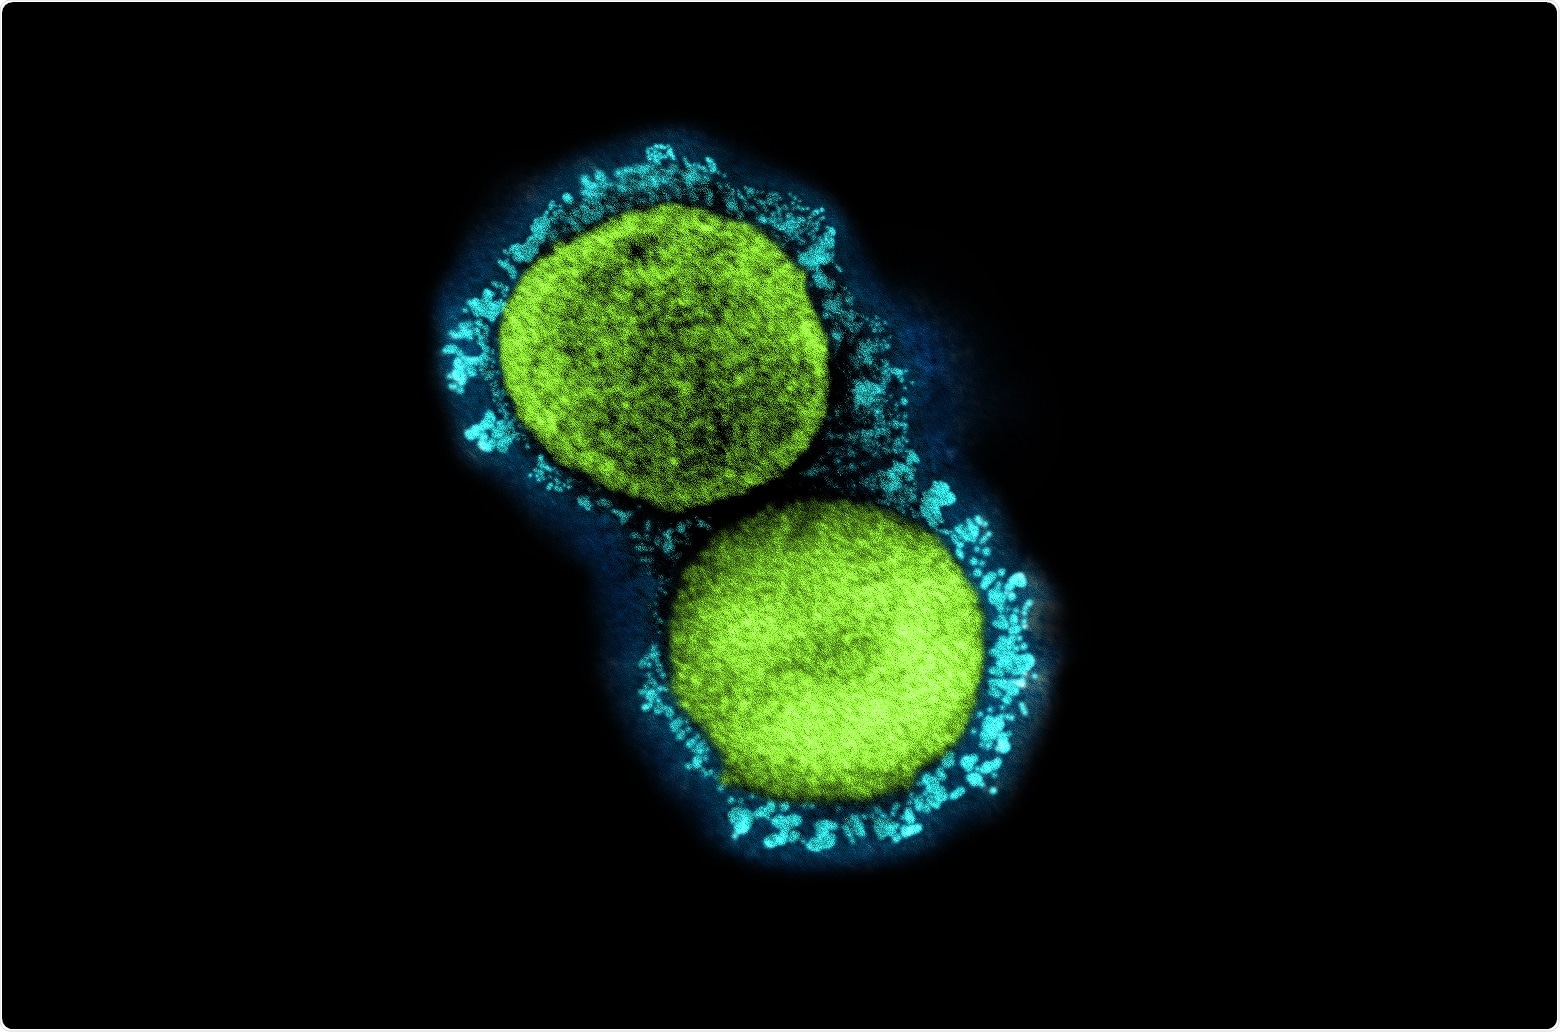 Estudo: Imunidade de célula T heterologous protectora em COVID-19 induzido pelo MMR e pelos antígenos da vacina de Tdap. Crédito de imagem: NIAID